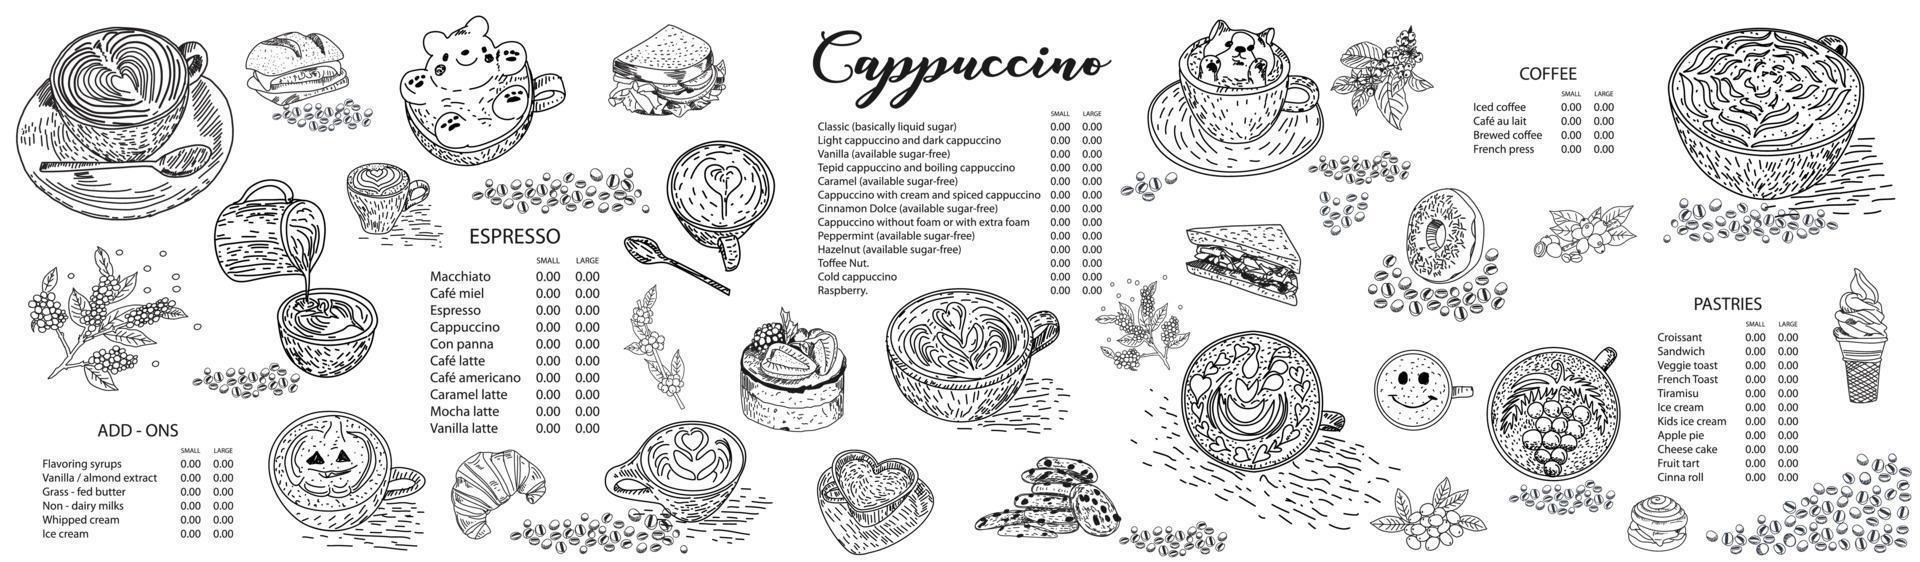 modelo de design de menu de café cappuccino. vetor